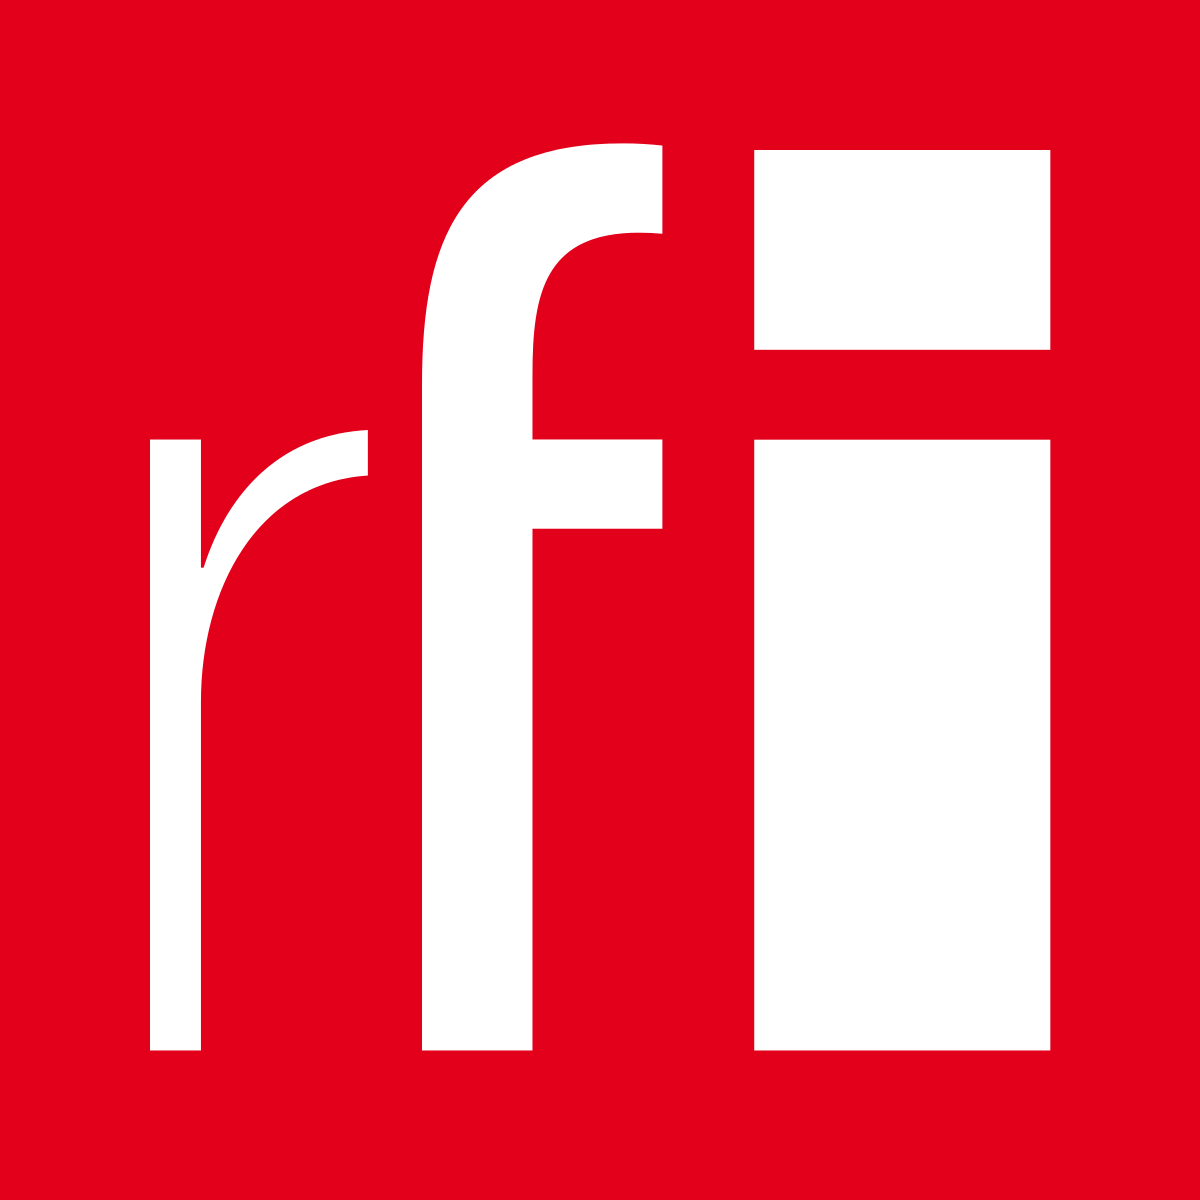 RFI logo